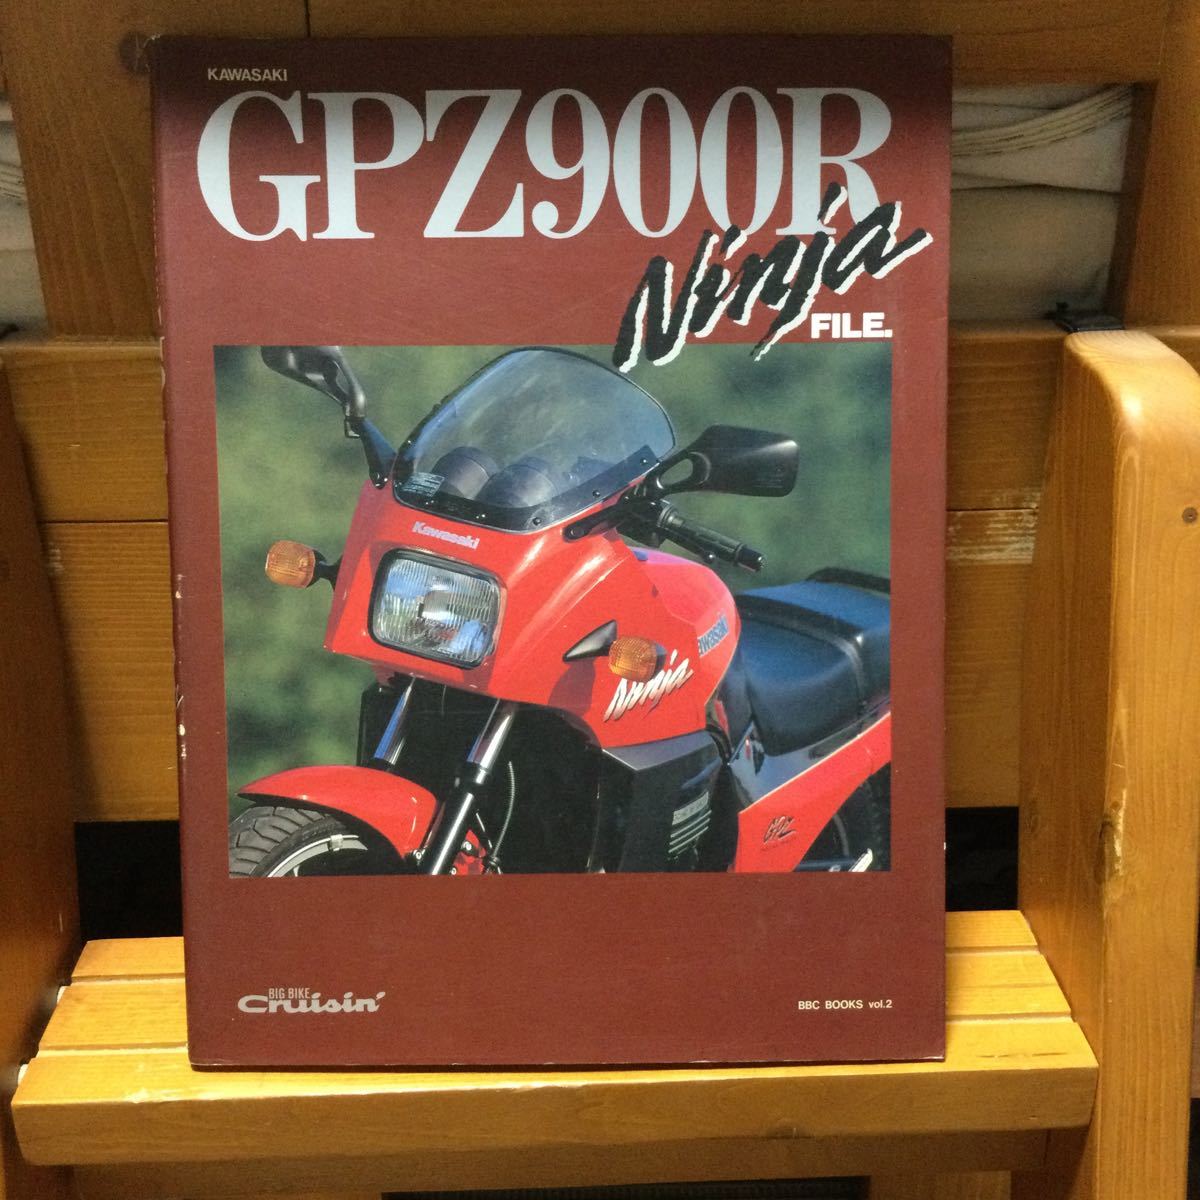 ヤフオク! -gpz900r(本、雑誌)の中古品・新品・古本一覧